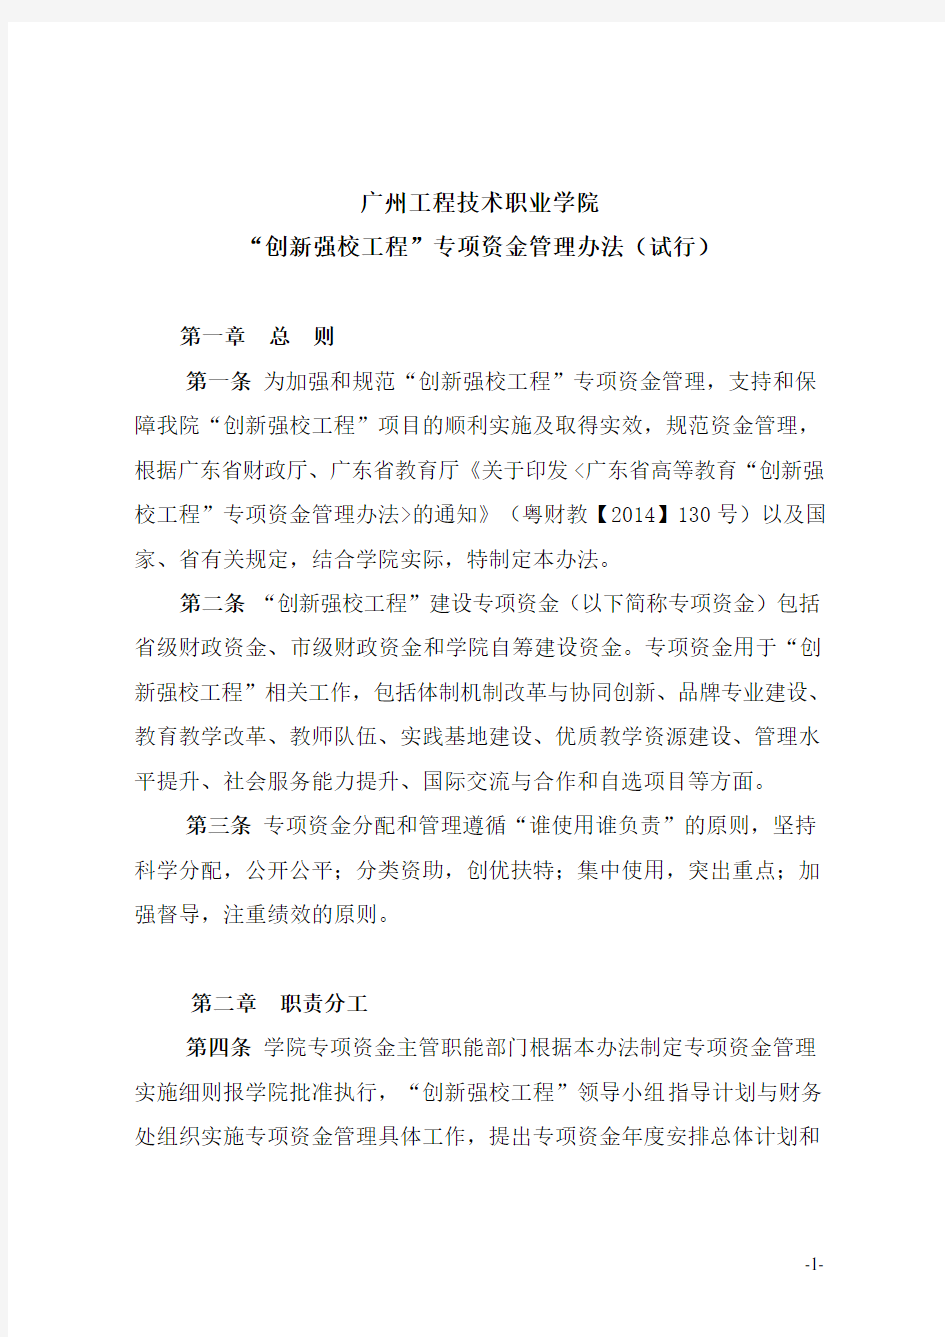 广州市区域节能评估报告编制指南.doc-广州市发展和改革委员会